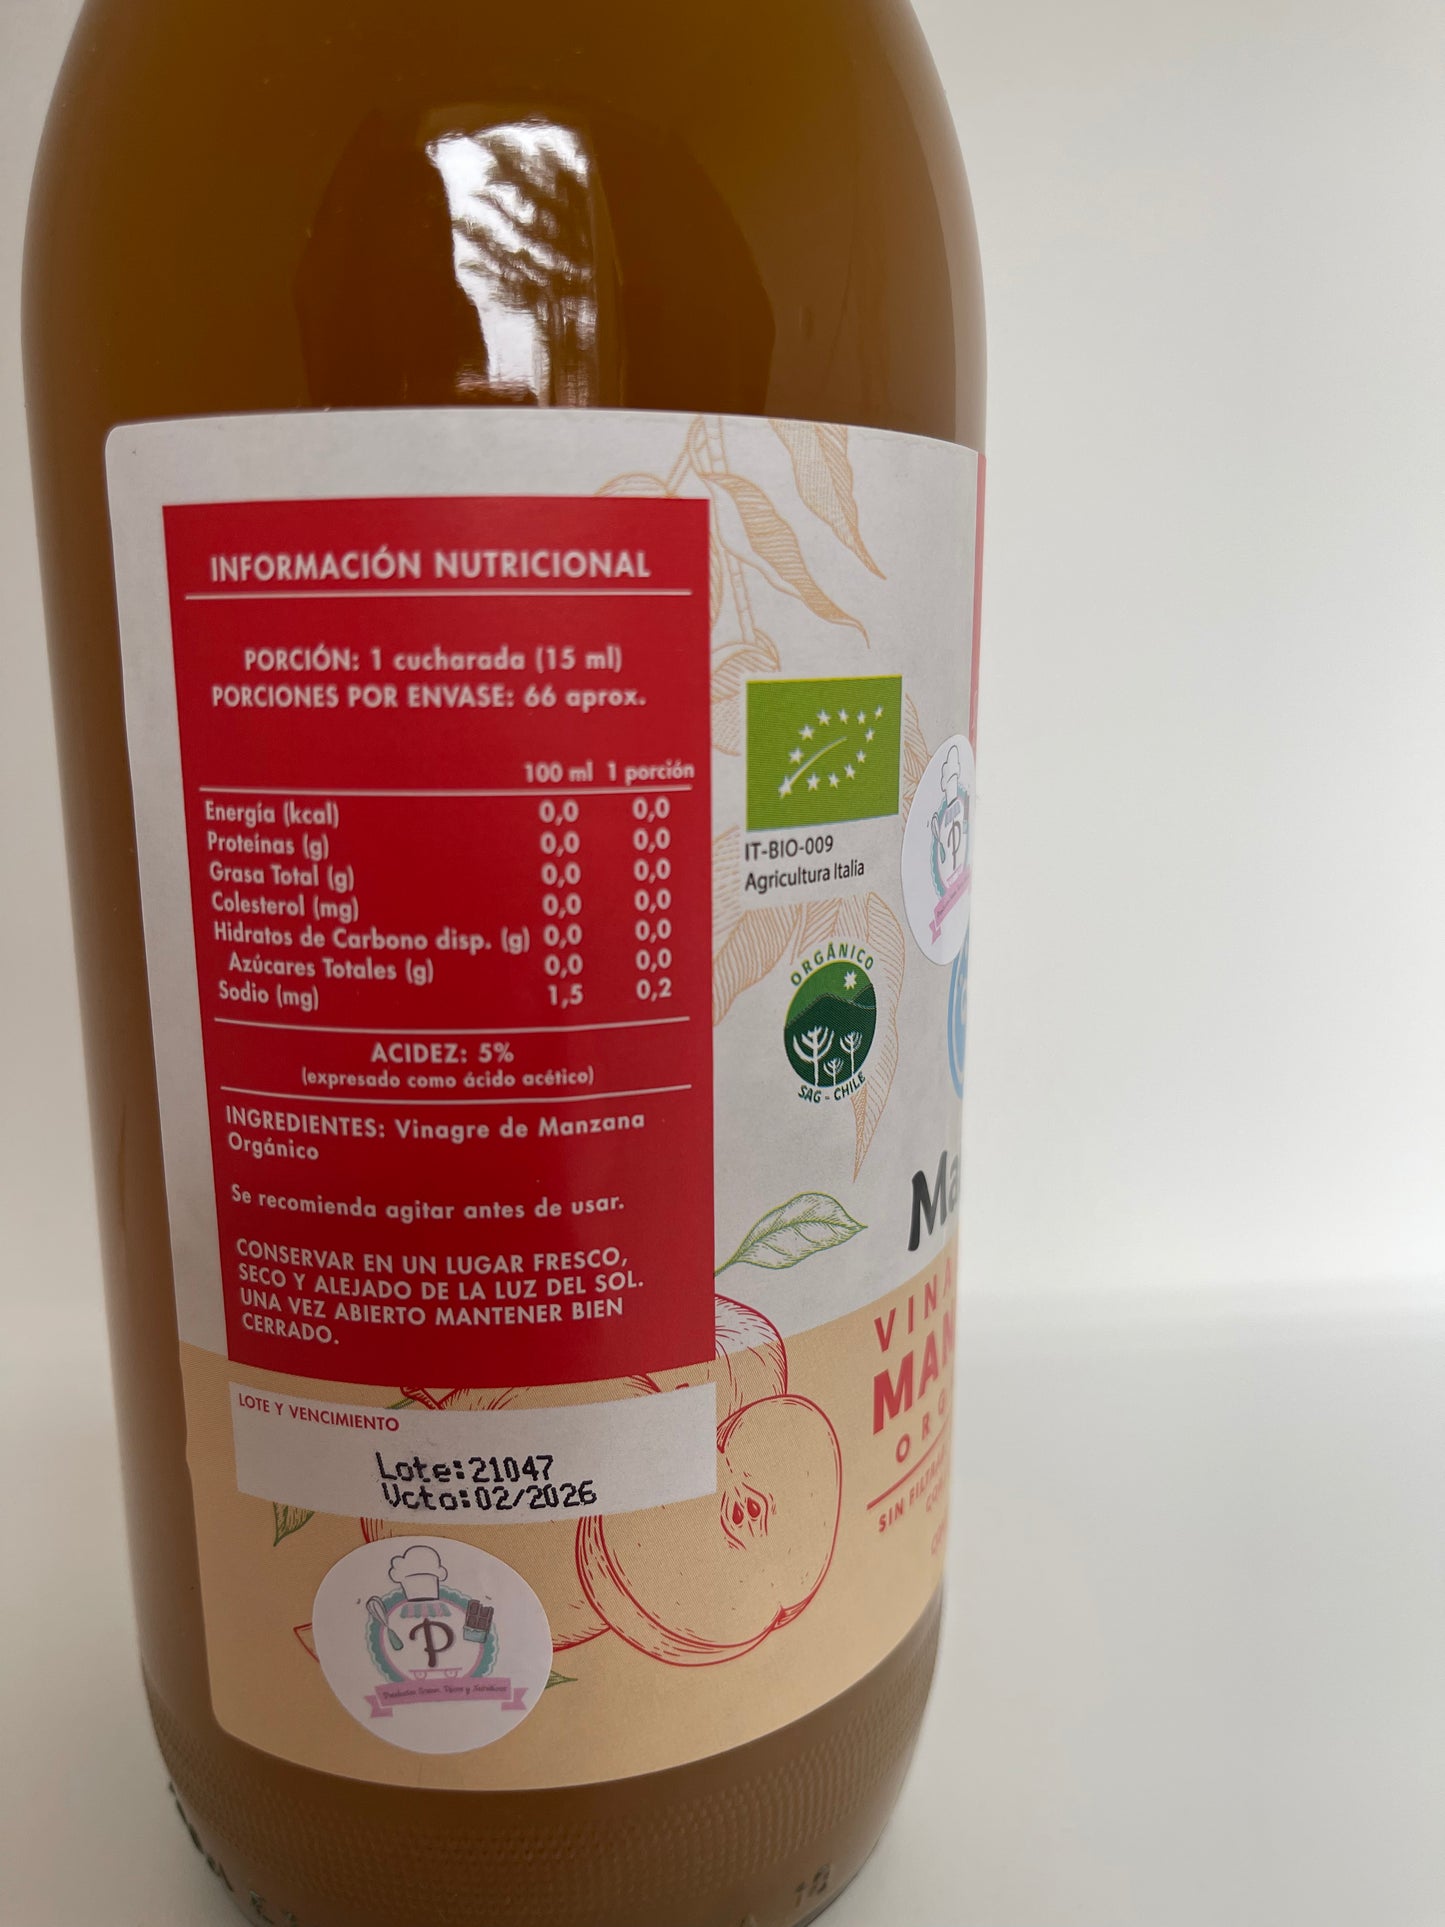 Vinagre de manzana orgánico "Manare" -